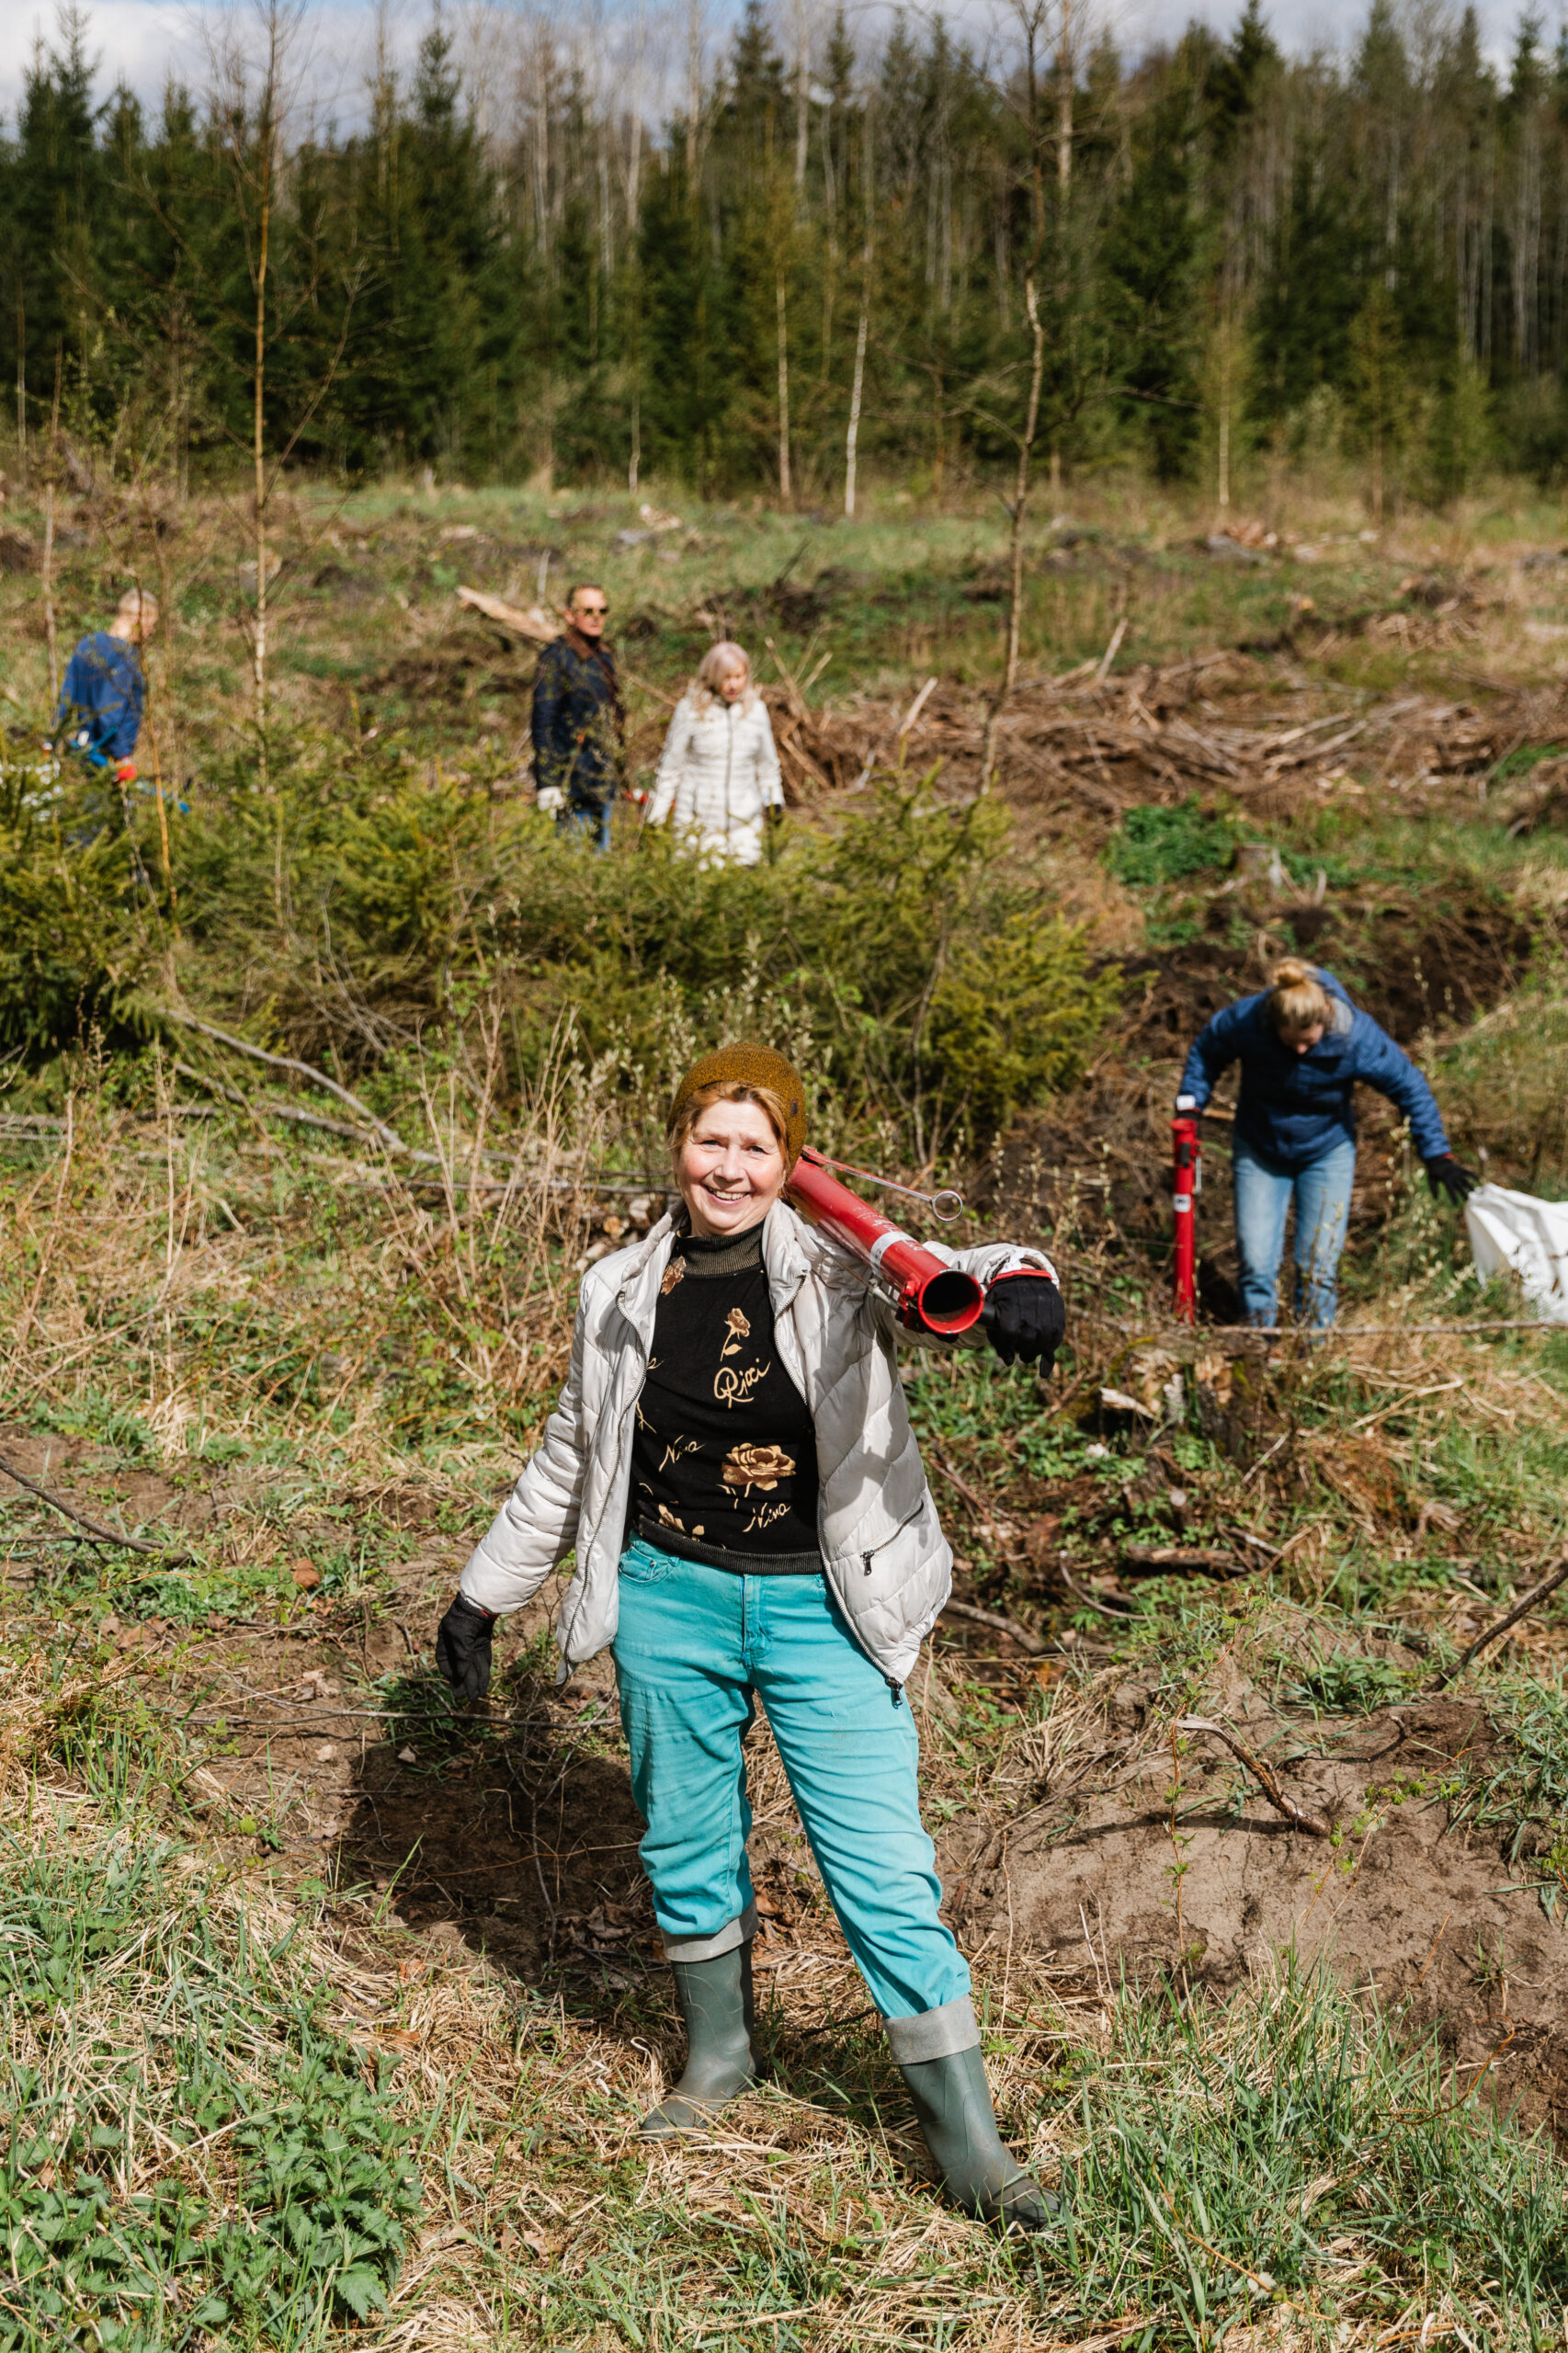 “Olainfarm” darbinieki kopā ar ģimenēm vietējā mežā iestāda vairākus simtus priežu